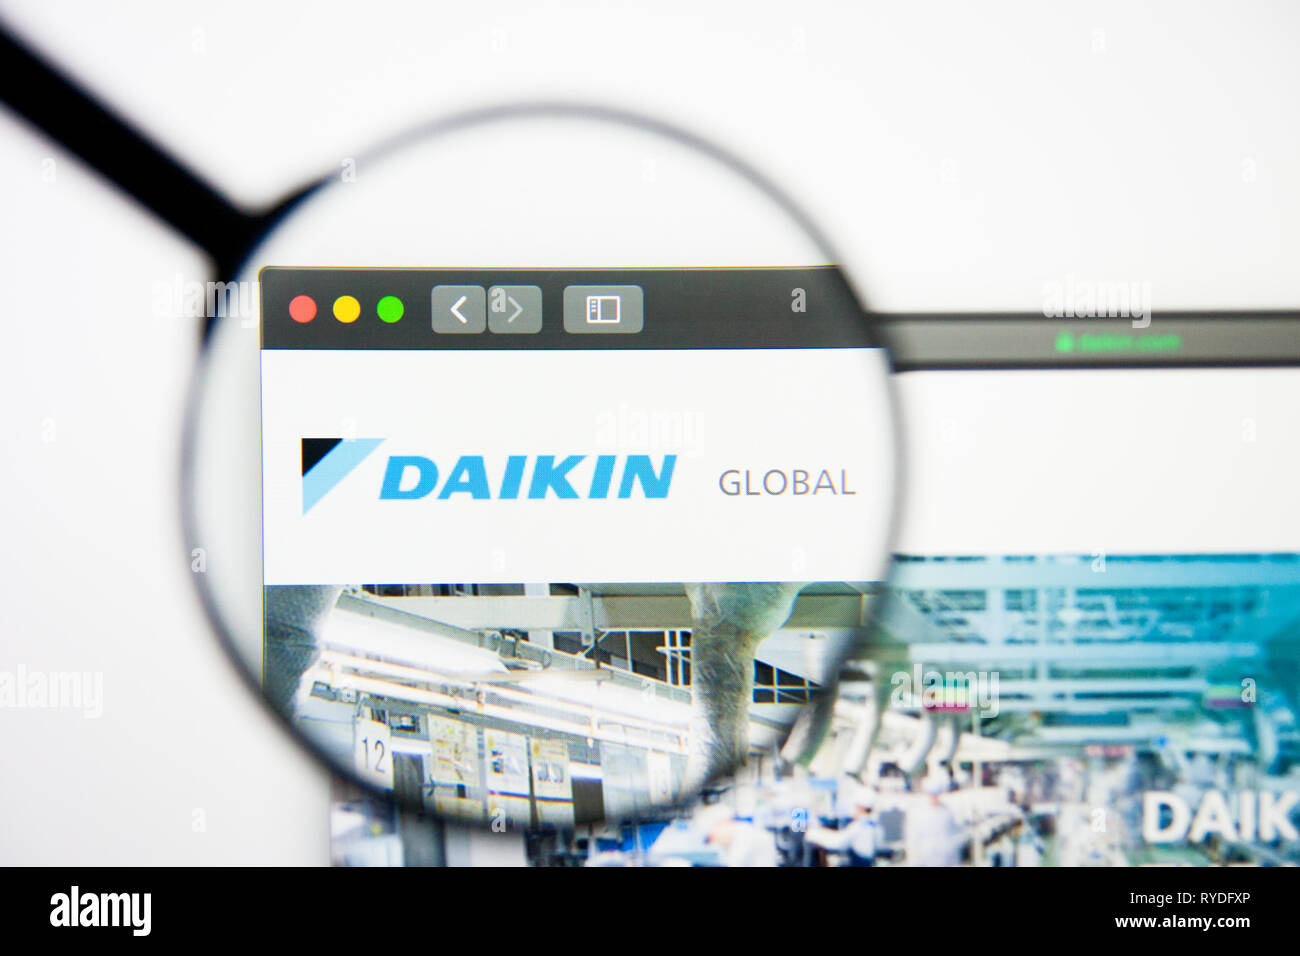 Los Angeles, California, Stati Uniti d'America - 5 Marzo 2019: Daikin Industries website homepage. Daikin Industries logo visibile sulla schermata di visualizzazione illustrativa Foto Stock